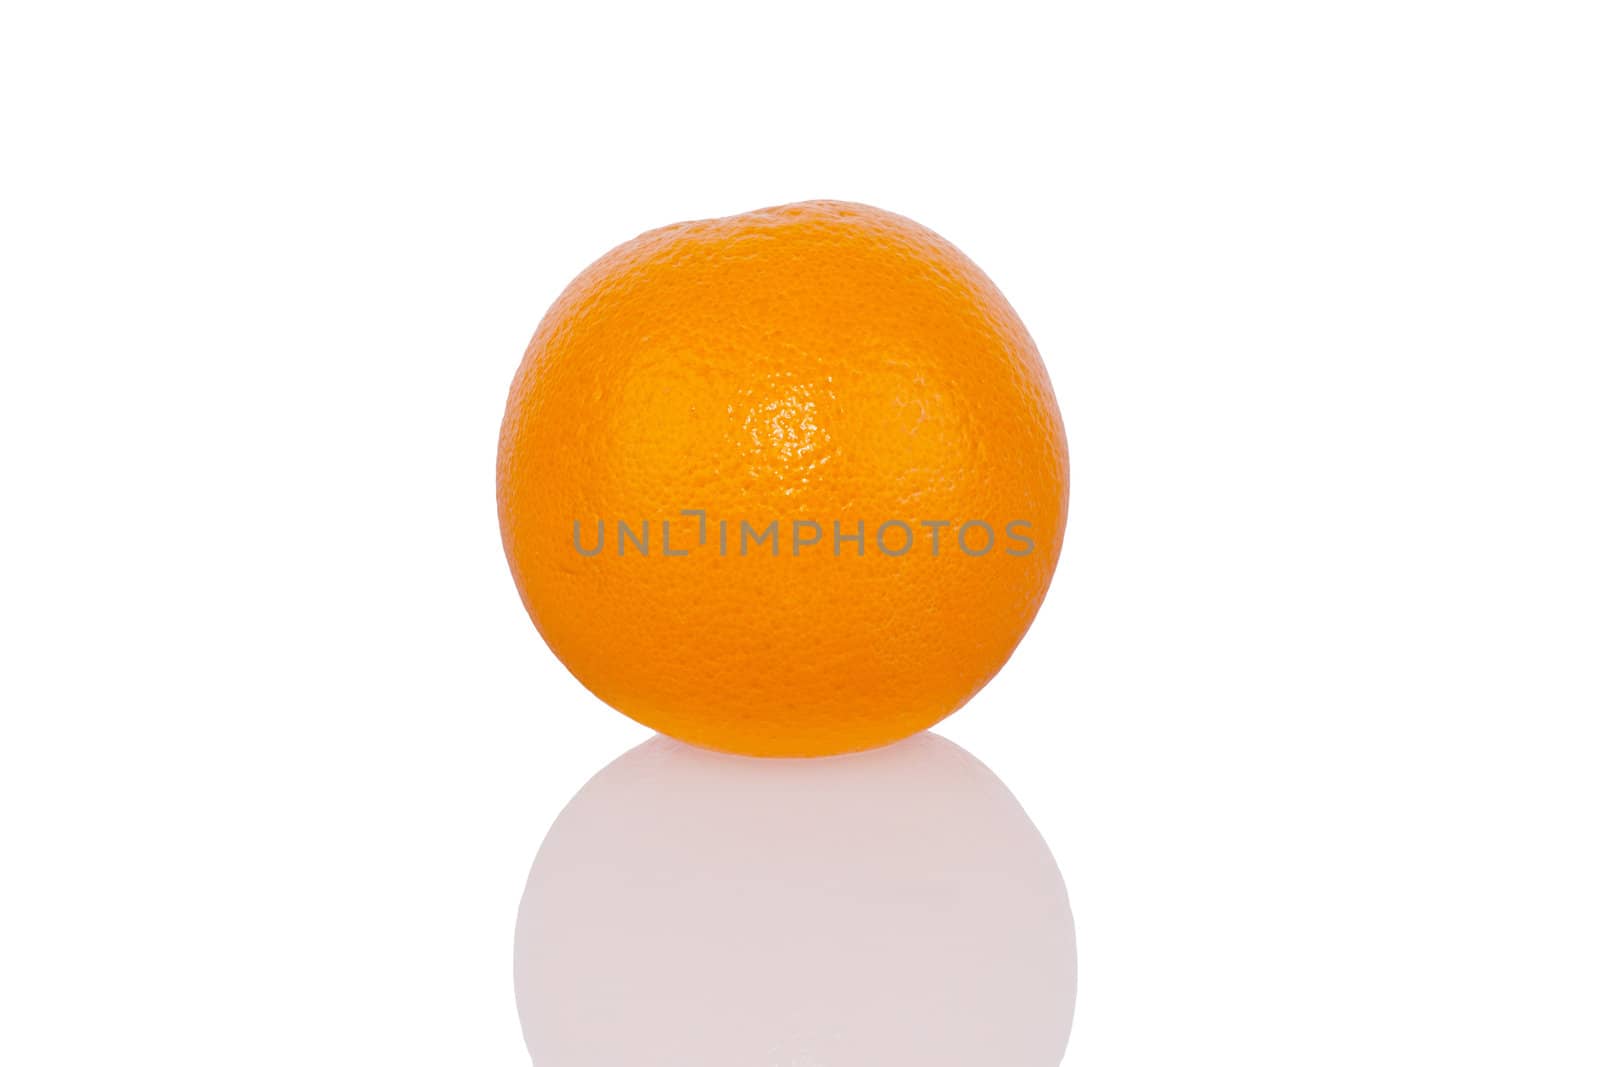 Ripe fresh orange isolated on white background